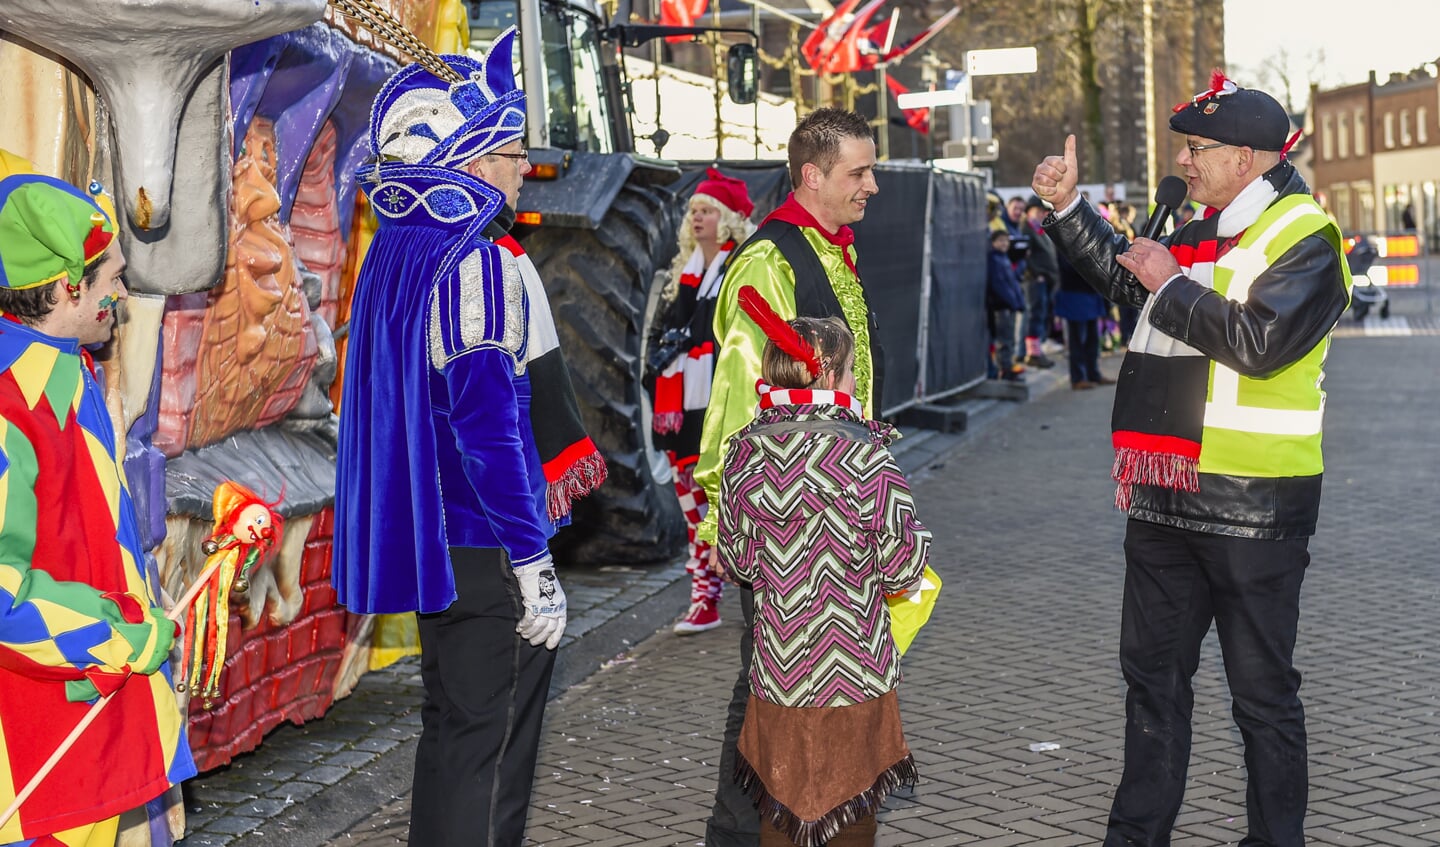 Oud Gastel - 10-02-2018 - Foto: Peter Braakmann - Voor de 58ste keer werd de Carnavals optocht Vasteelaovedzottelaand gehouden.